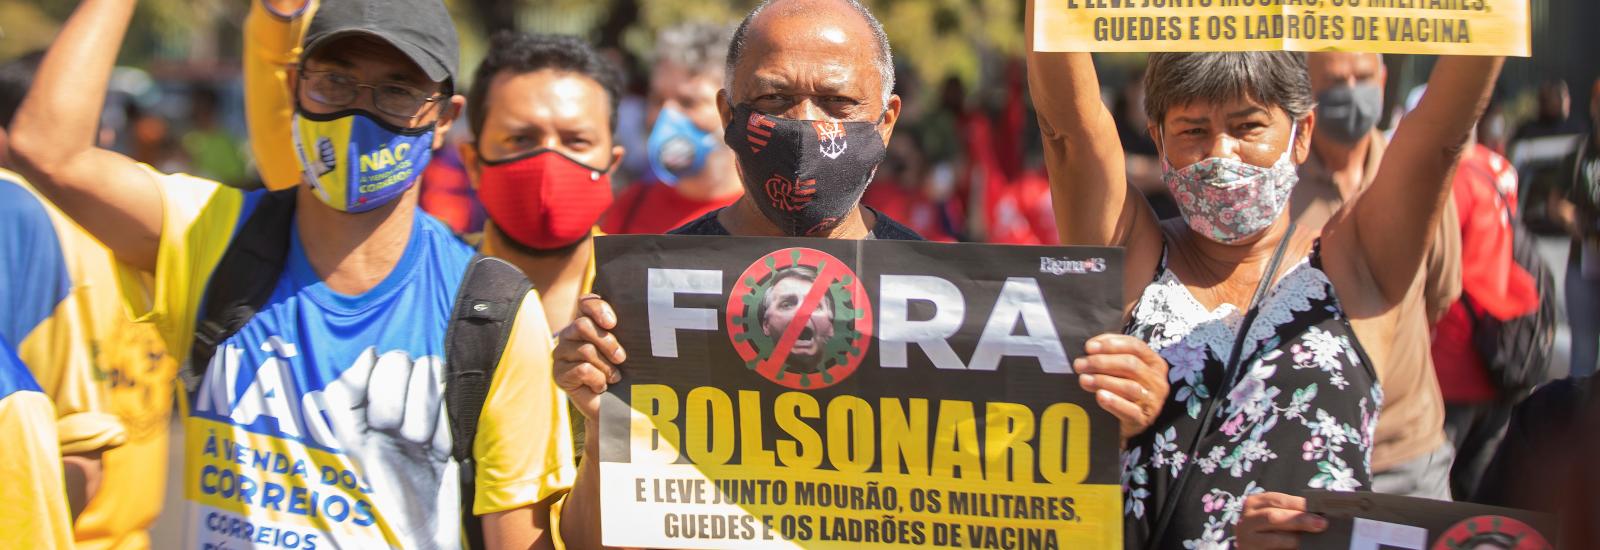 Protesto a exigir a demissão de Bolsonaro em Brasília a 18 de agosto de 2021